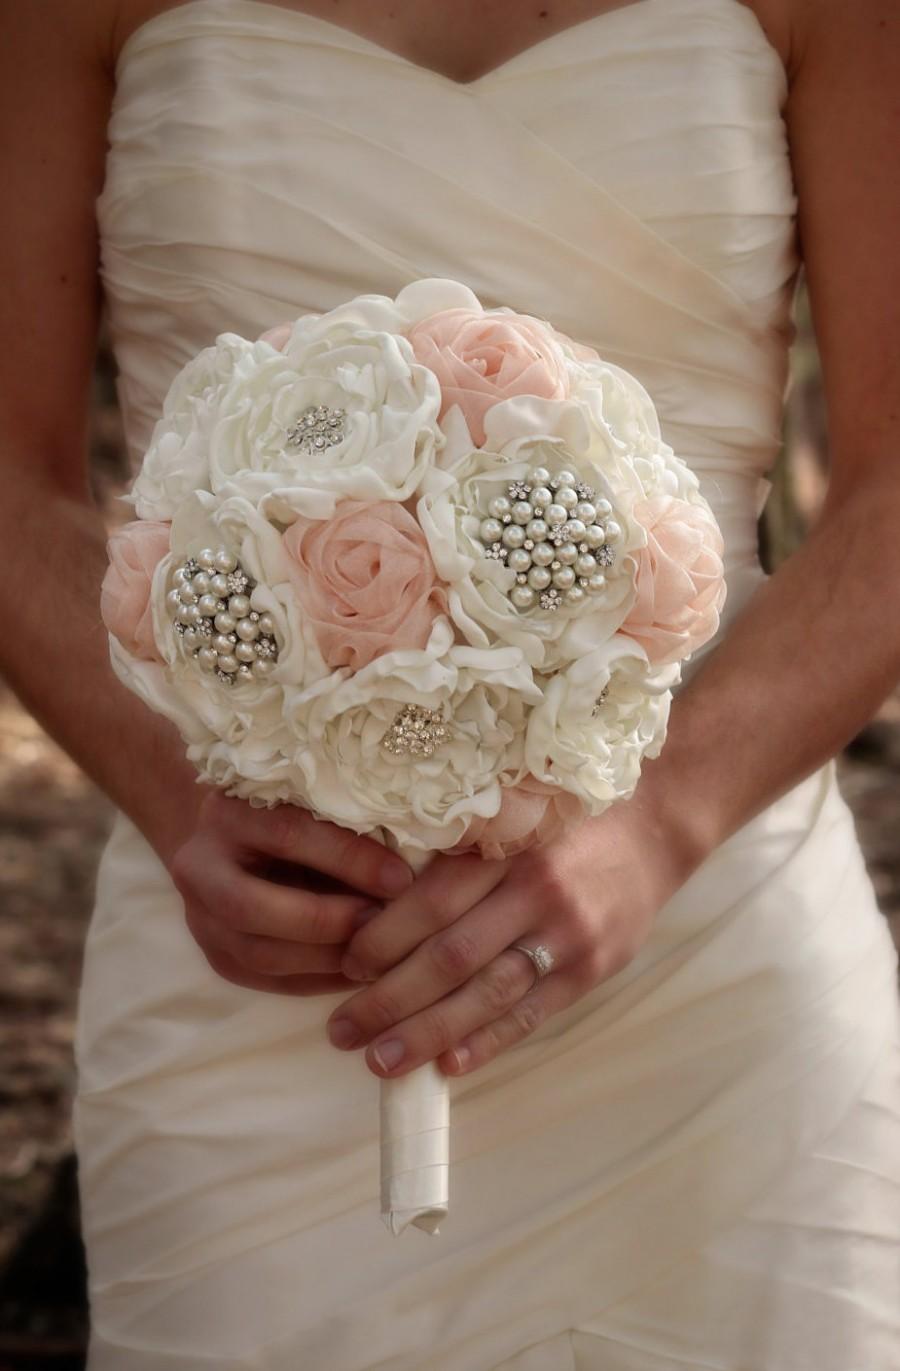 زفاف - Wedding Bouquet 